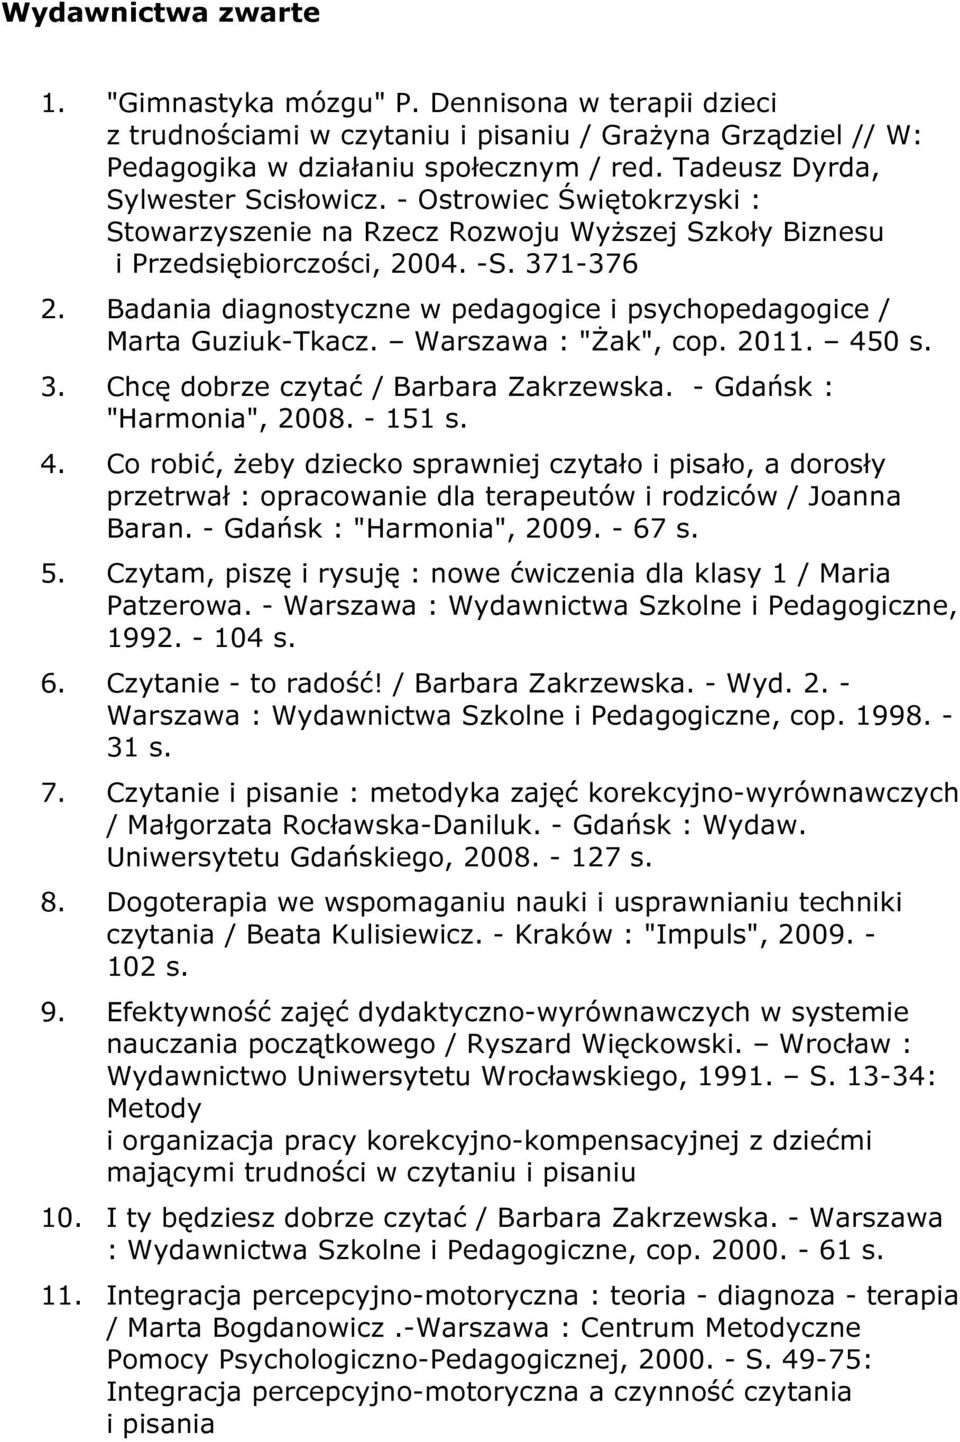 Badania diagnostyczne w pedagogice i psychopedagogice / Marta Guziuk-Tkacz. Warszawa : "Żak", cop. 2011. 45